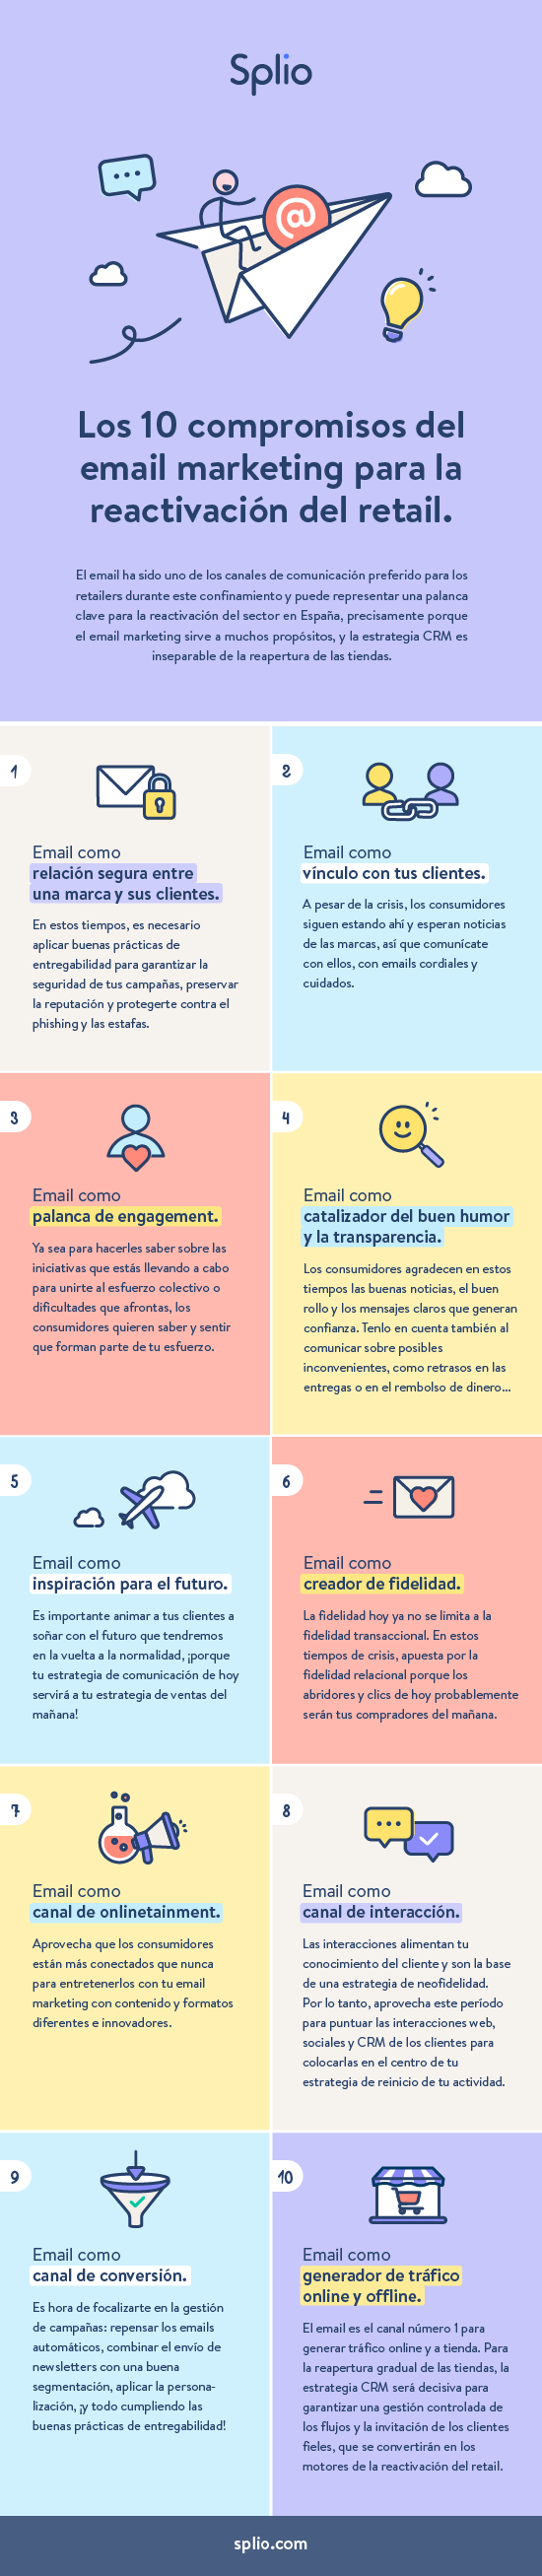 Infografía - Los 10 compromisos del email marketing